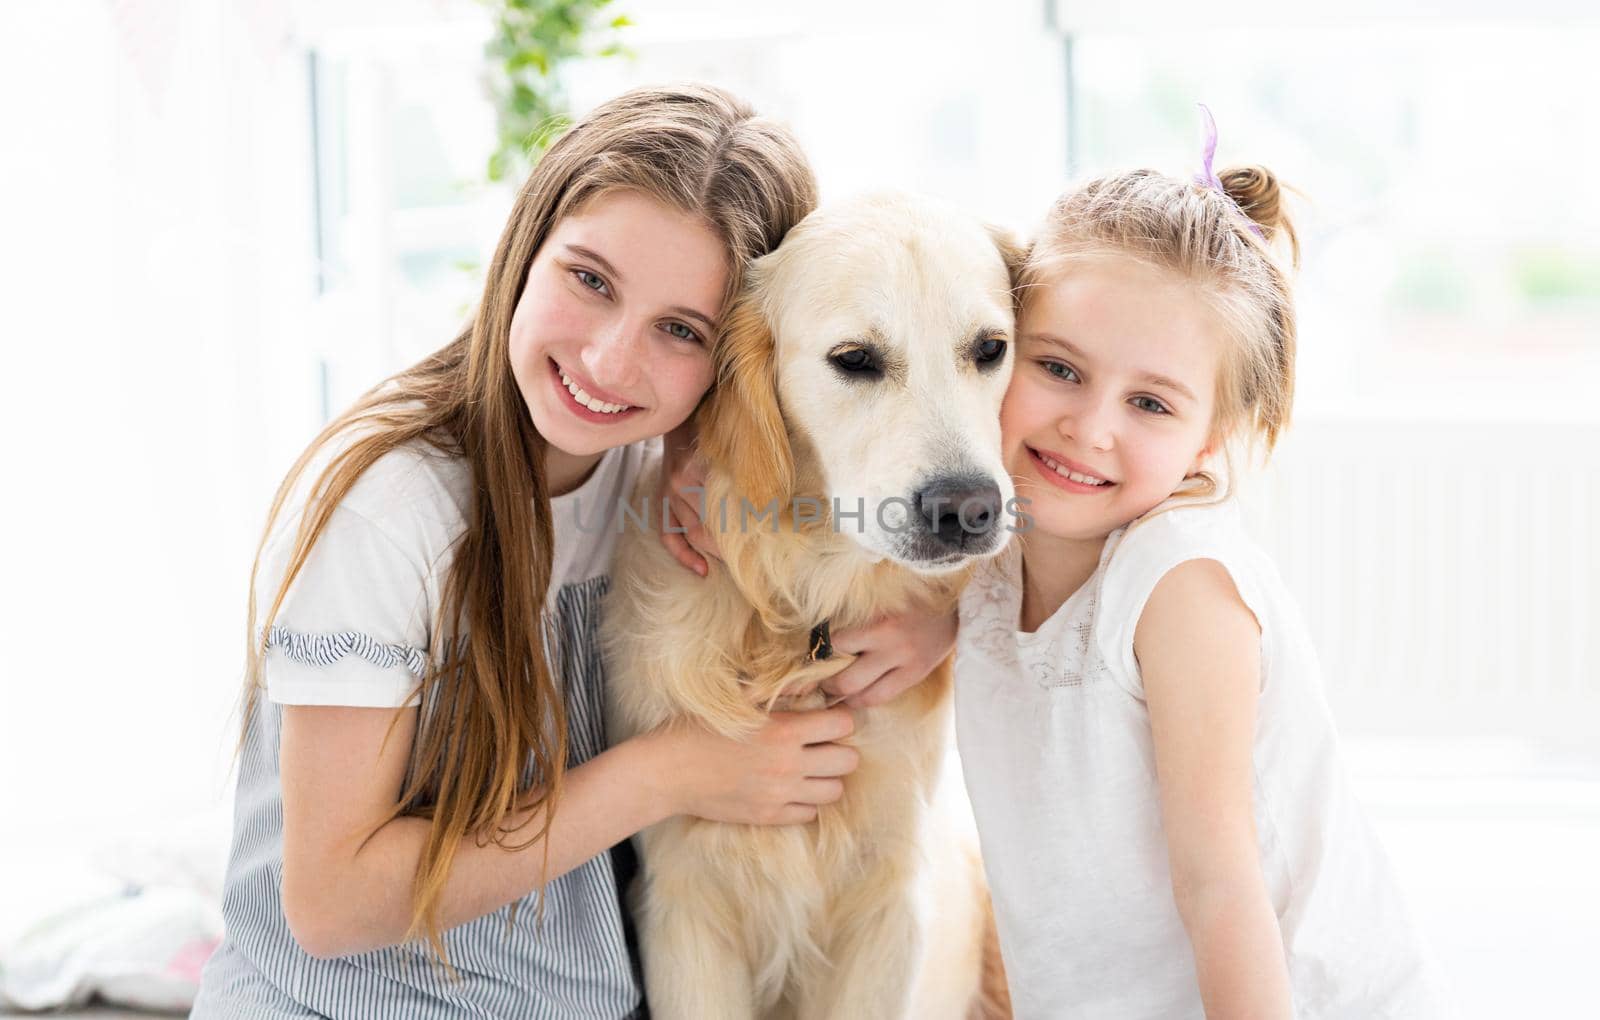 Smiling sisters with cute dog by GekaSkr